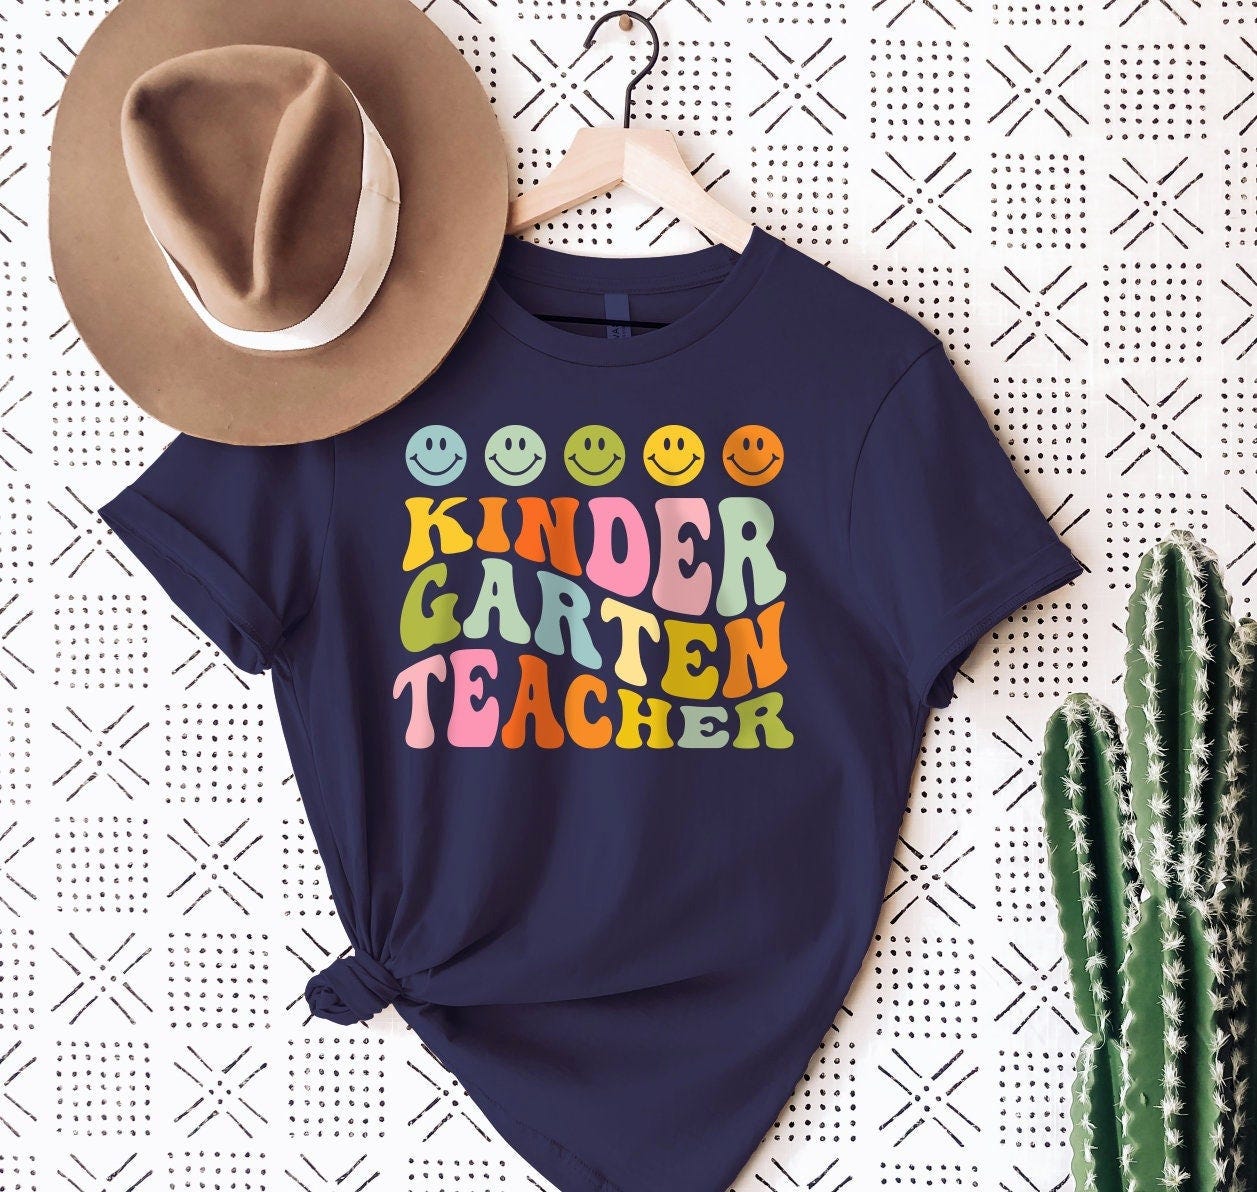 Kindergarten Teacher SVG T-Shirt Cut File  Digital Clipart Cricut Silhouette Cute Teacher Gift Back to School Teach Love Inspire DIY Gift